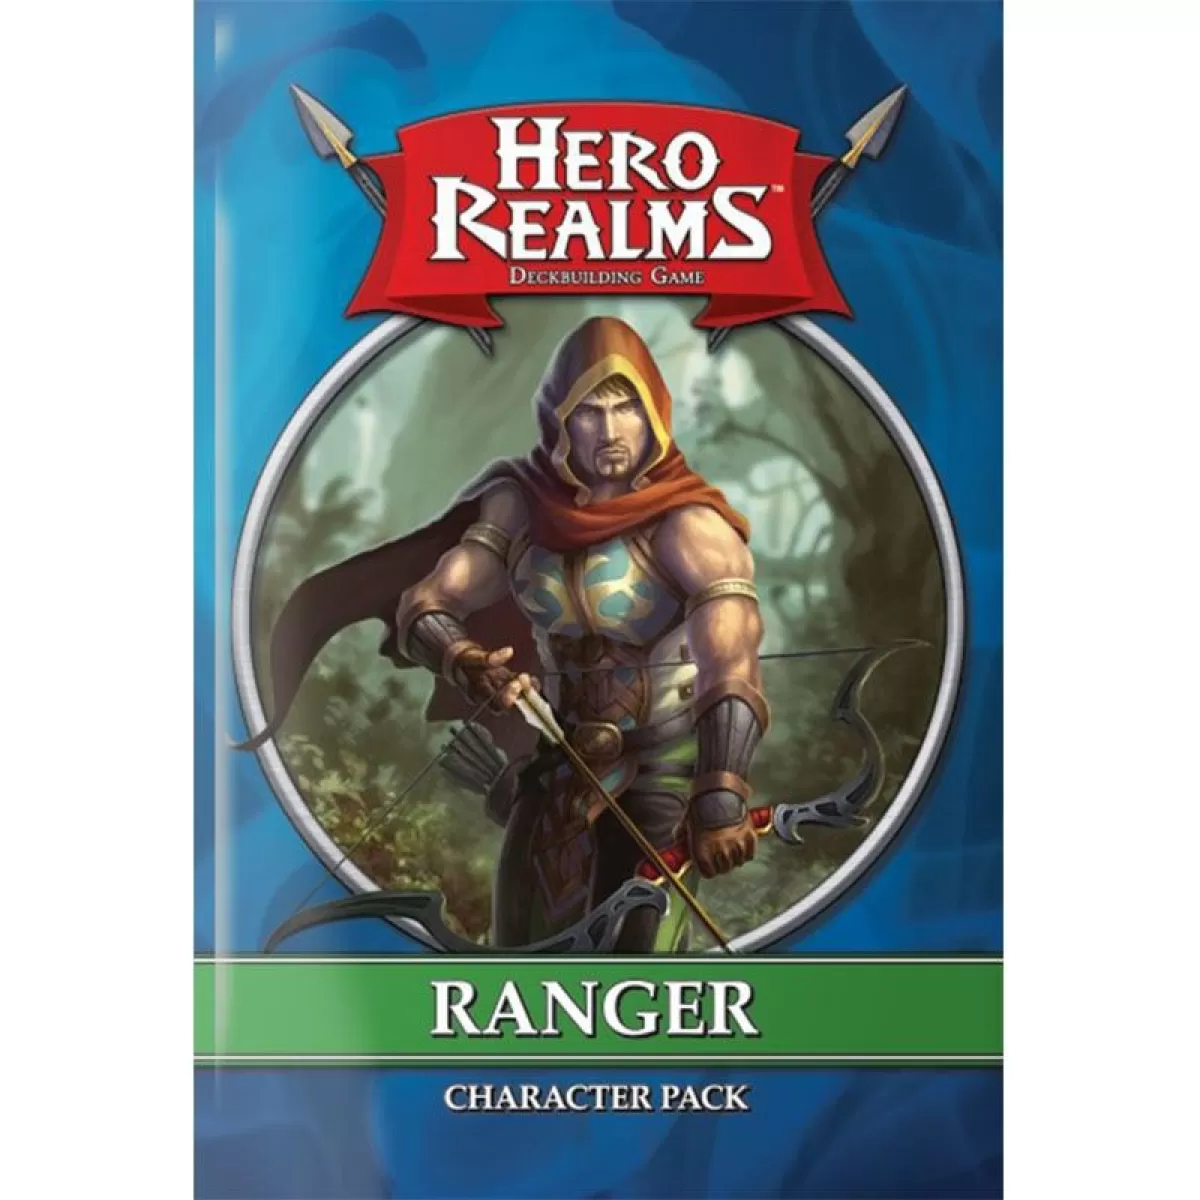 Hero realms: Character pack - ranger